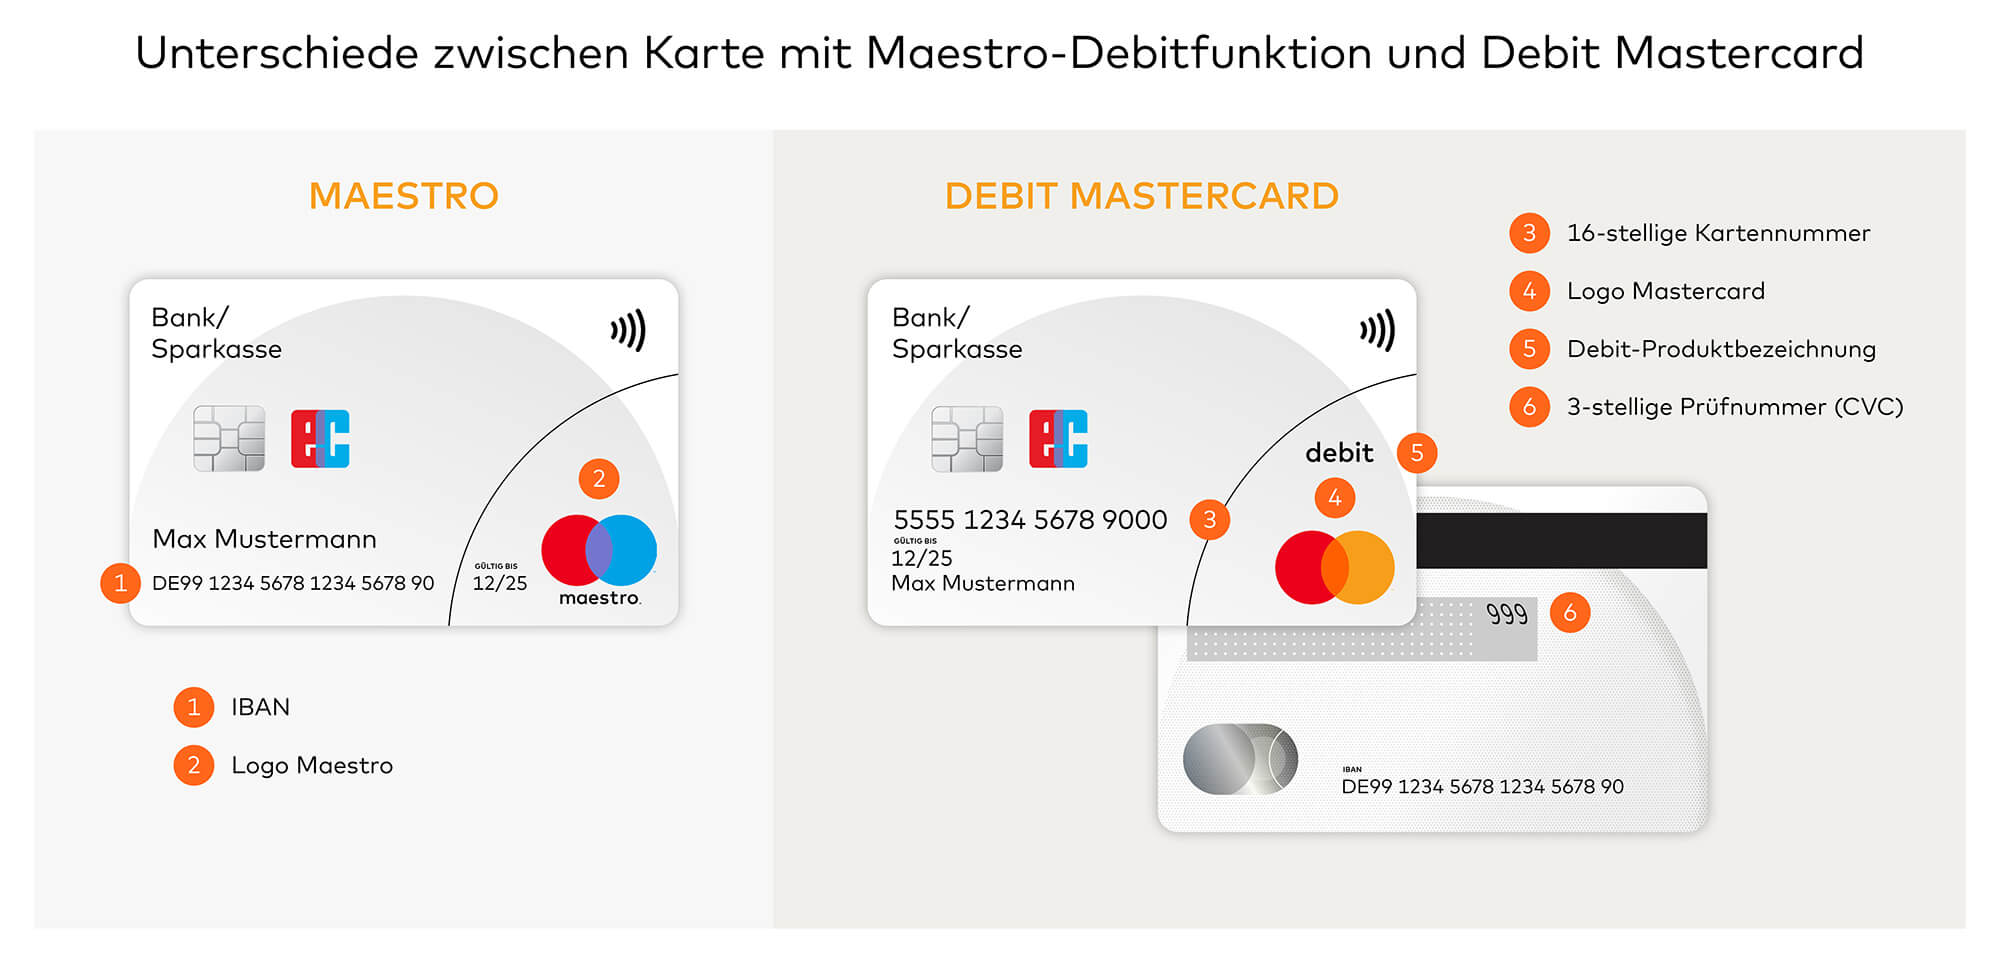 Unterschiede zwischen Karte mit Maestro-Debitfunktion und Debit Mastercard